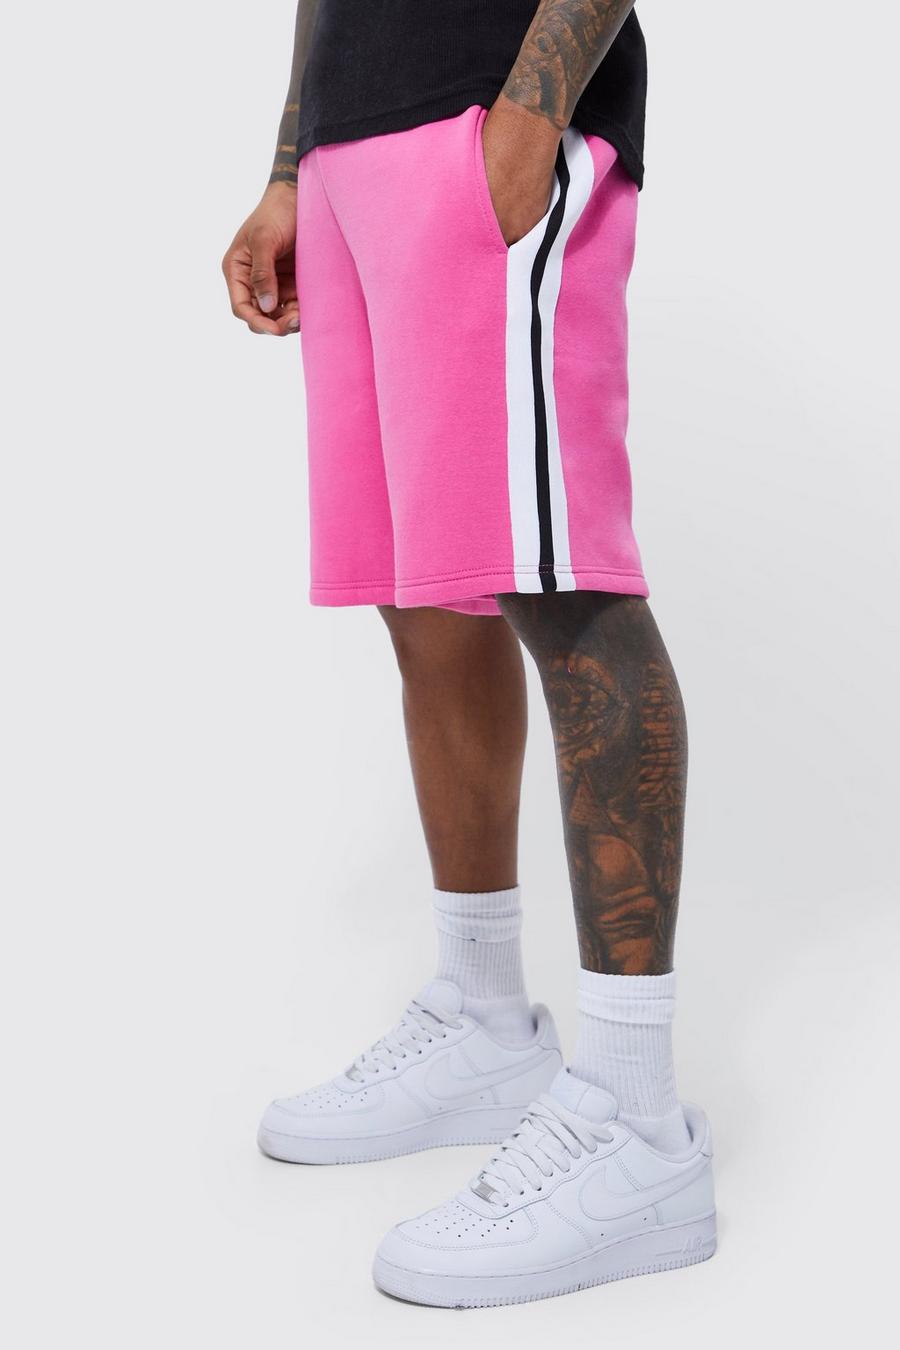 Lockere Jersey-Shorts mit Seitenstreifen, Pink rose